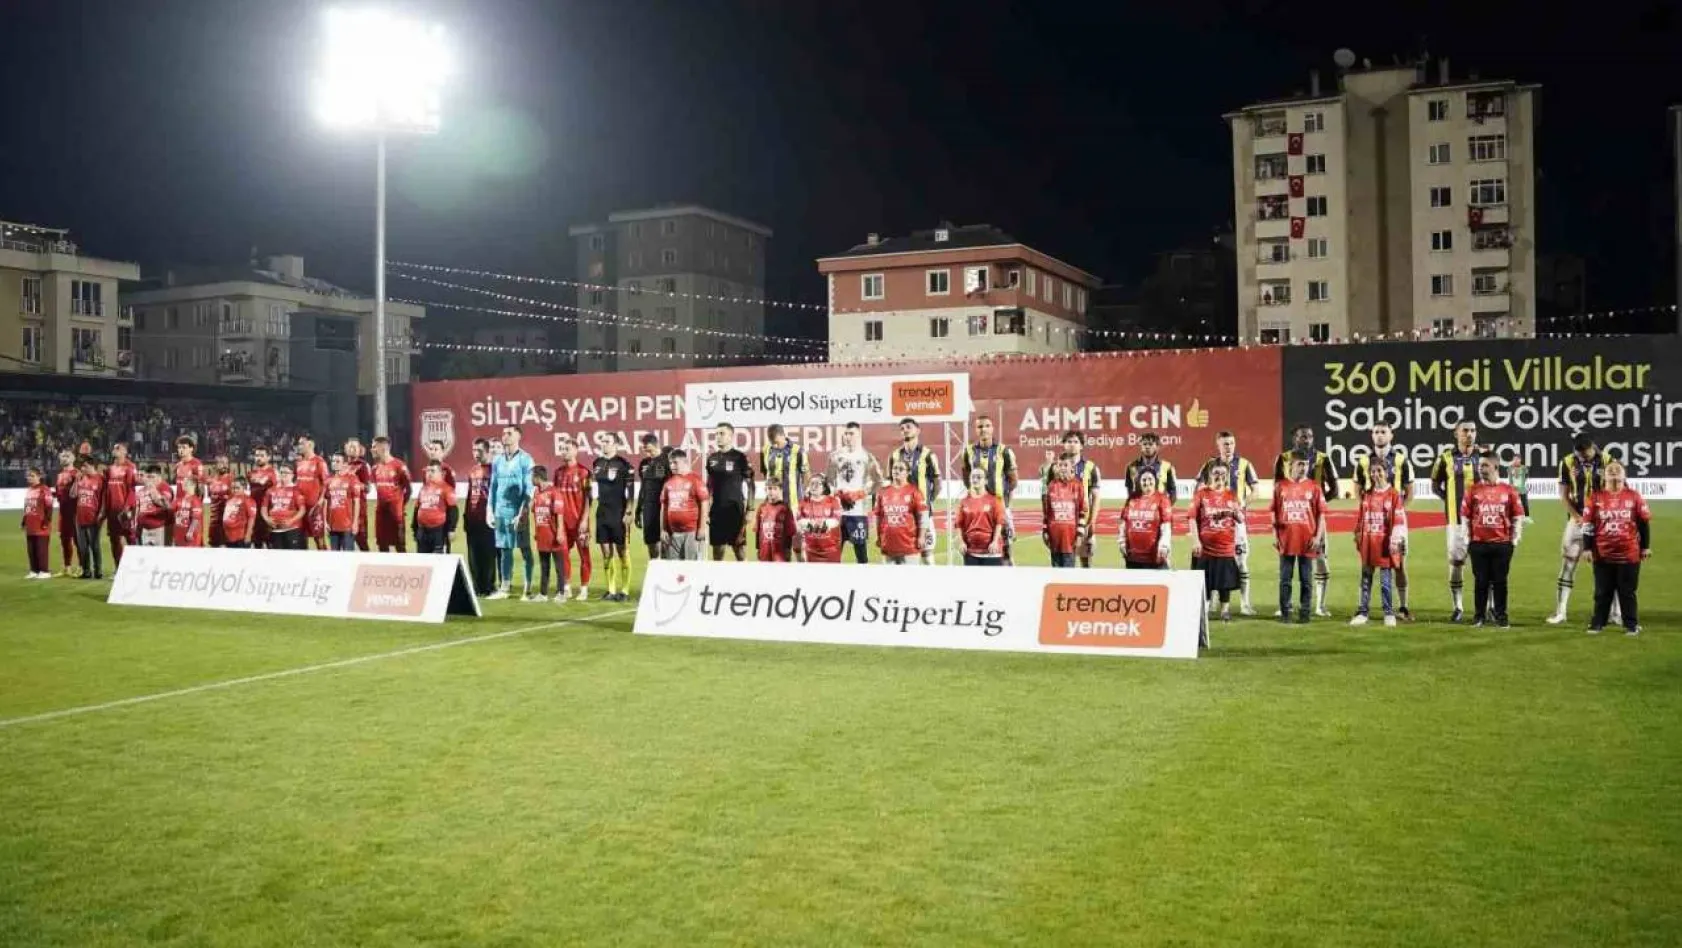 Trendyol Süper Lig: Pendikspor: 0 - Fenerbahçe: 0 (Maç devam ediyor)